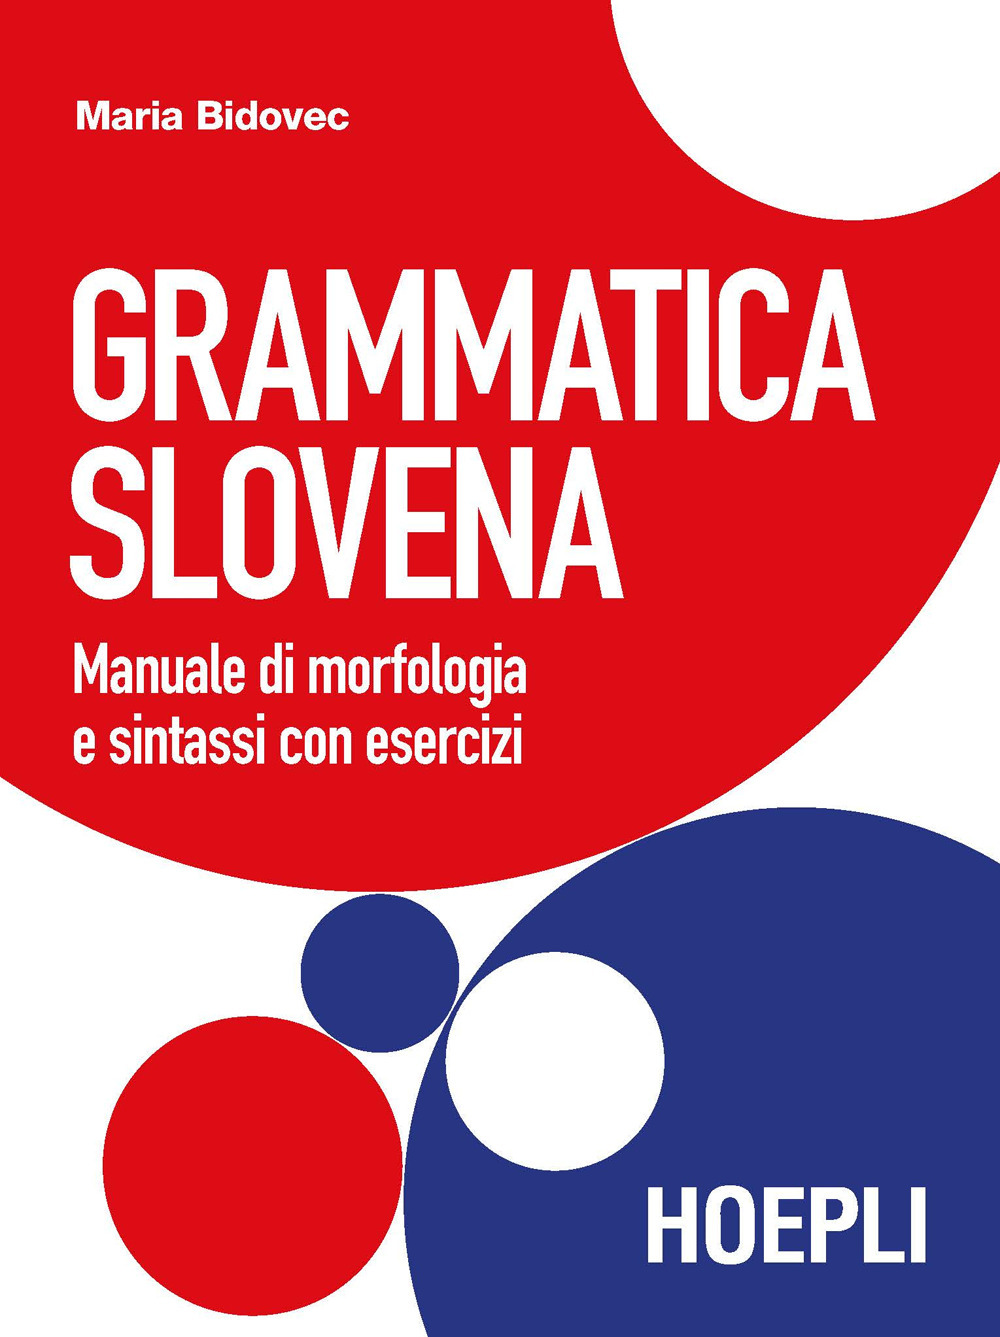 Libri Maria Bidovec - Grammatica Slovena. Manuale Di Morfologia E Cenni Di Sintassi Con Esercizi NUOVO SIGILLATO, EDIZIONE DEL 03/09/2021 SUBITO DISPONIBILE